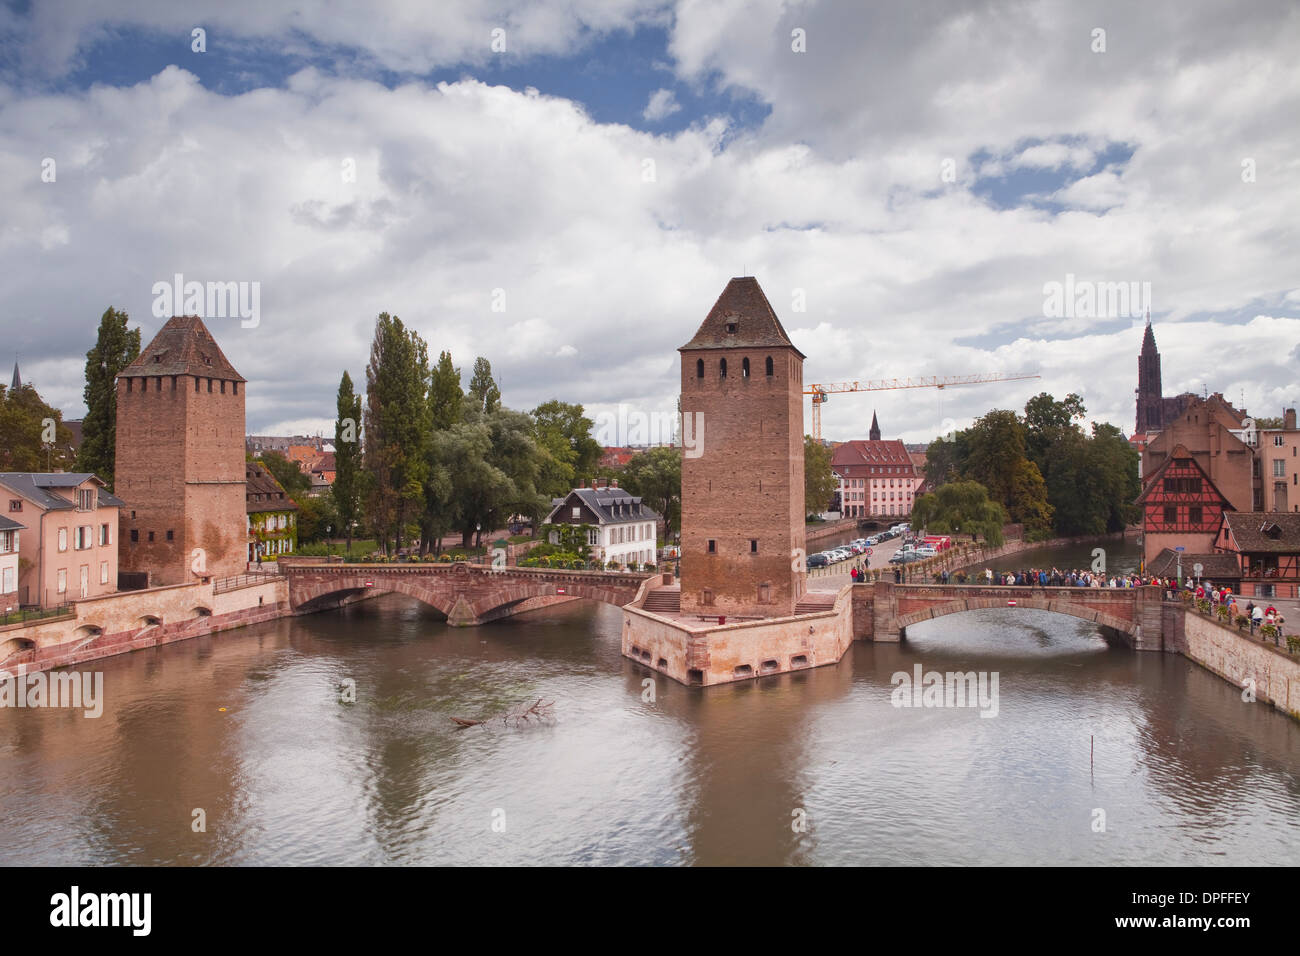 Les Ponts Couverts datant du 13e siècle, le marchant Ill, Site de l'UNESCO, Strasbourg, Bas-Rhin, Alsace, France Banque D'Images